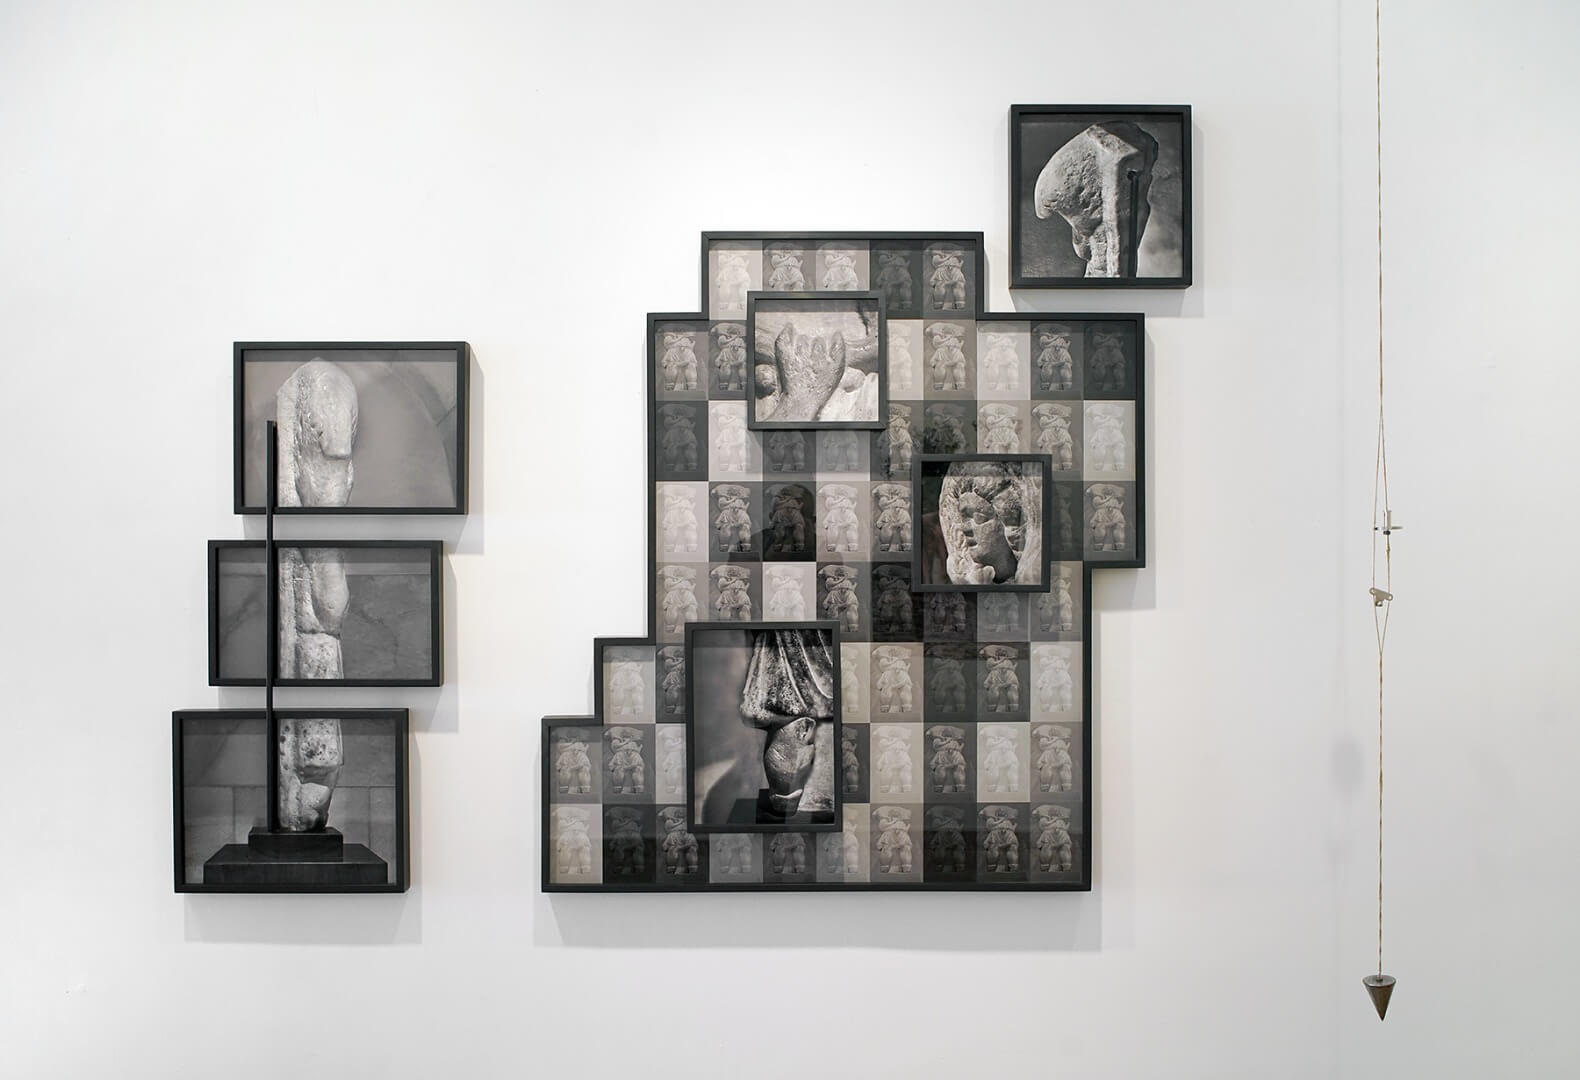 אורית ישי, הבשורה, 2018, מיצב צילומי, צילום שלמה סרי, Orit Ishay, The Annunciatuon, 2018, photographic installation